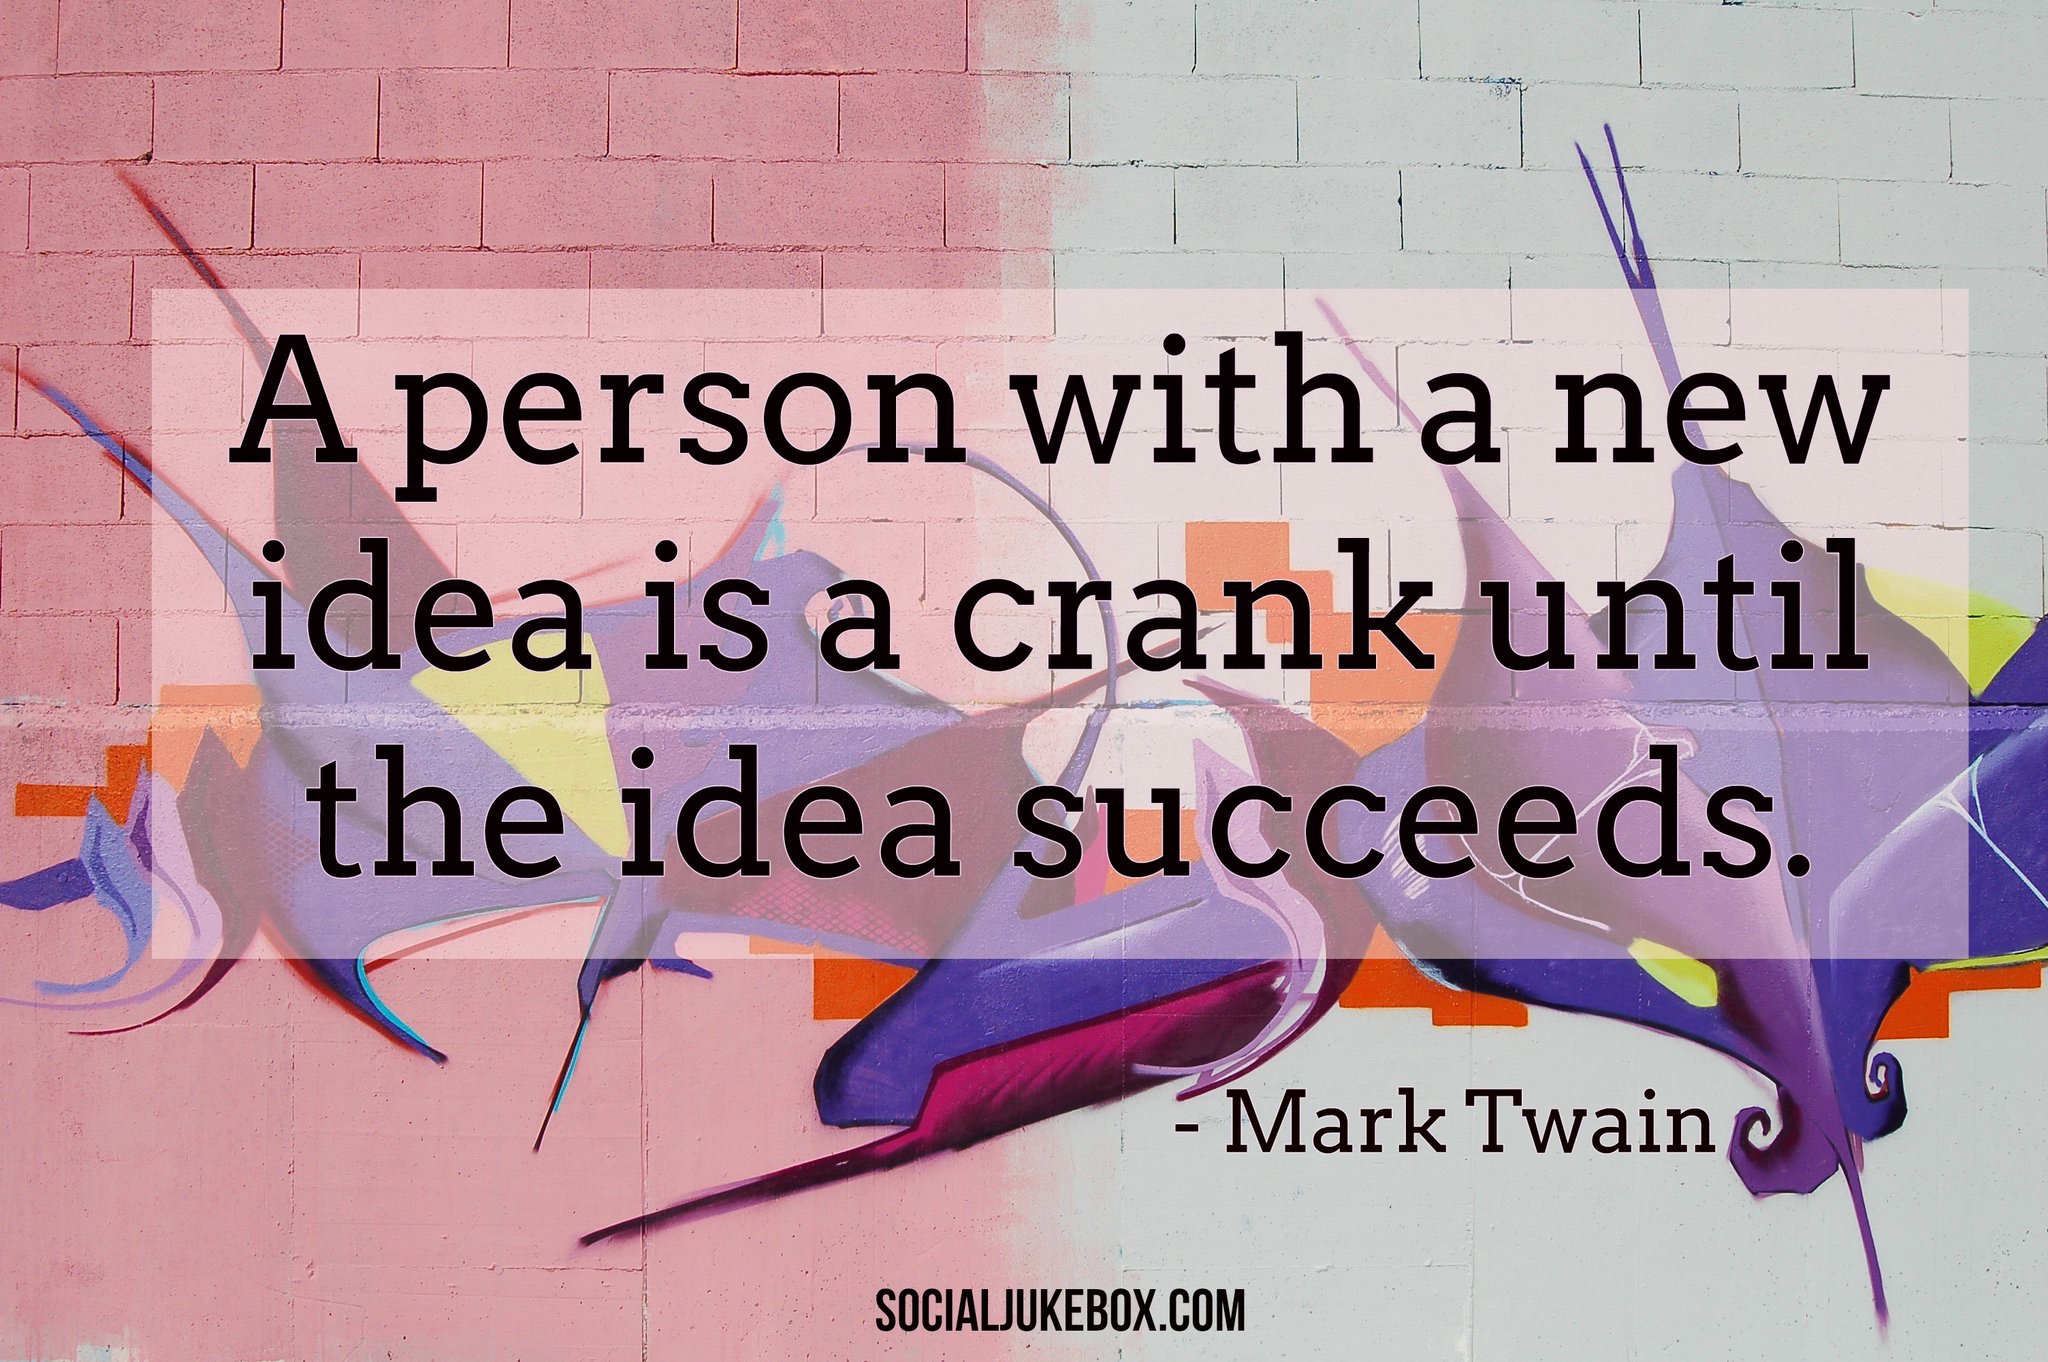 Mark Twain Cranky